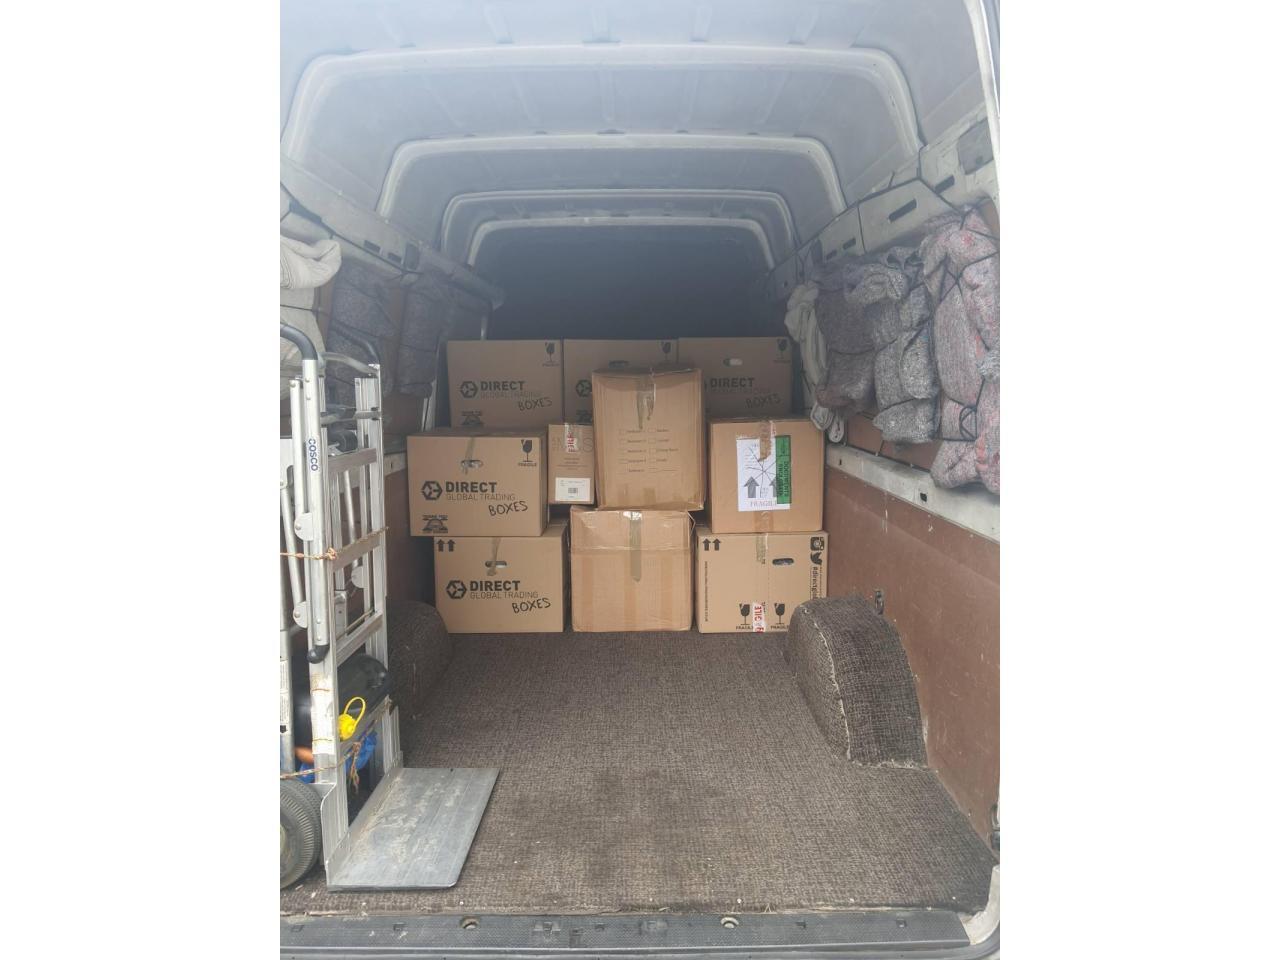 Man and Van in London - Переезды, перевозки, доставка любых грузов и товаров - от £30 - 2